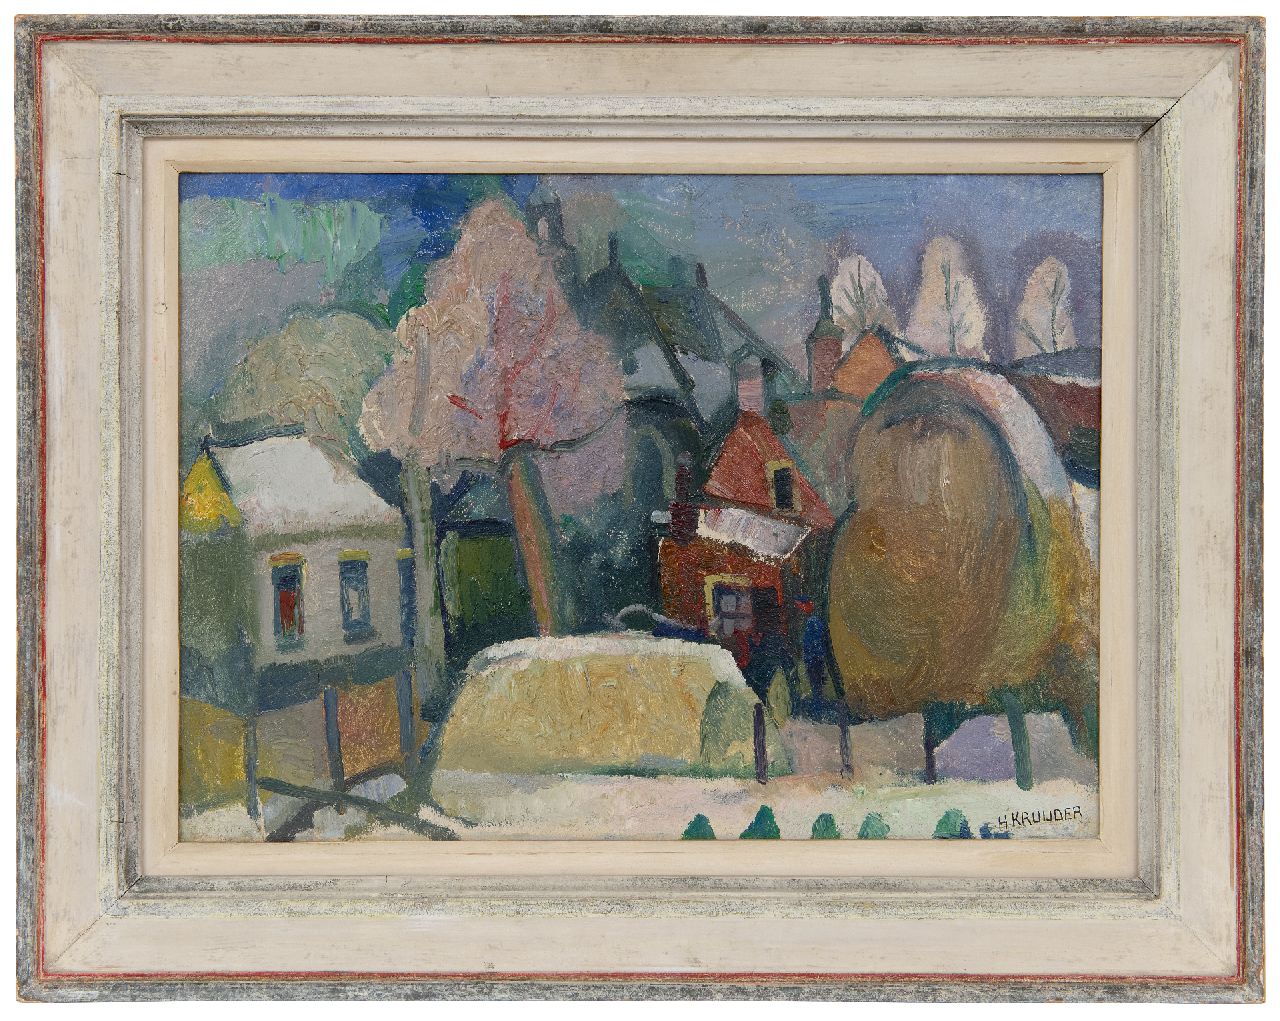 Kruyder H.J.  | 'Herman' Justus Kruyder | Schilderijen te koop aangeboden | Bewaarschooltje, Heemstede, olieverf op board 32,0 x 43,7 cm, gesigneerd rechtsonder en te dateren ca. 1919-1923